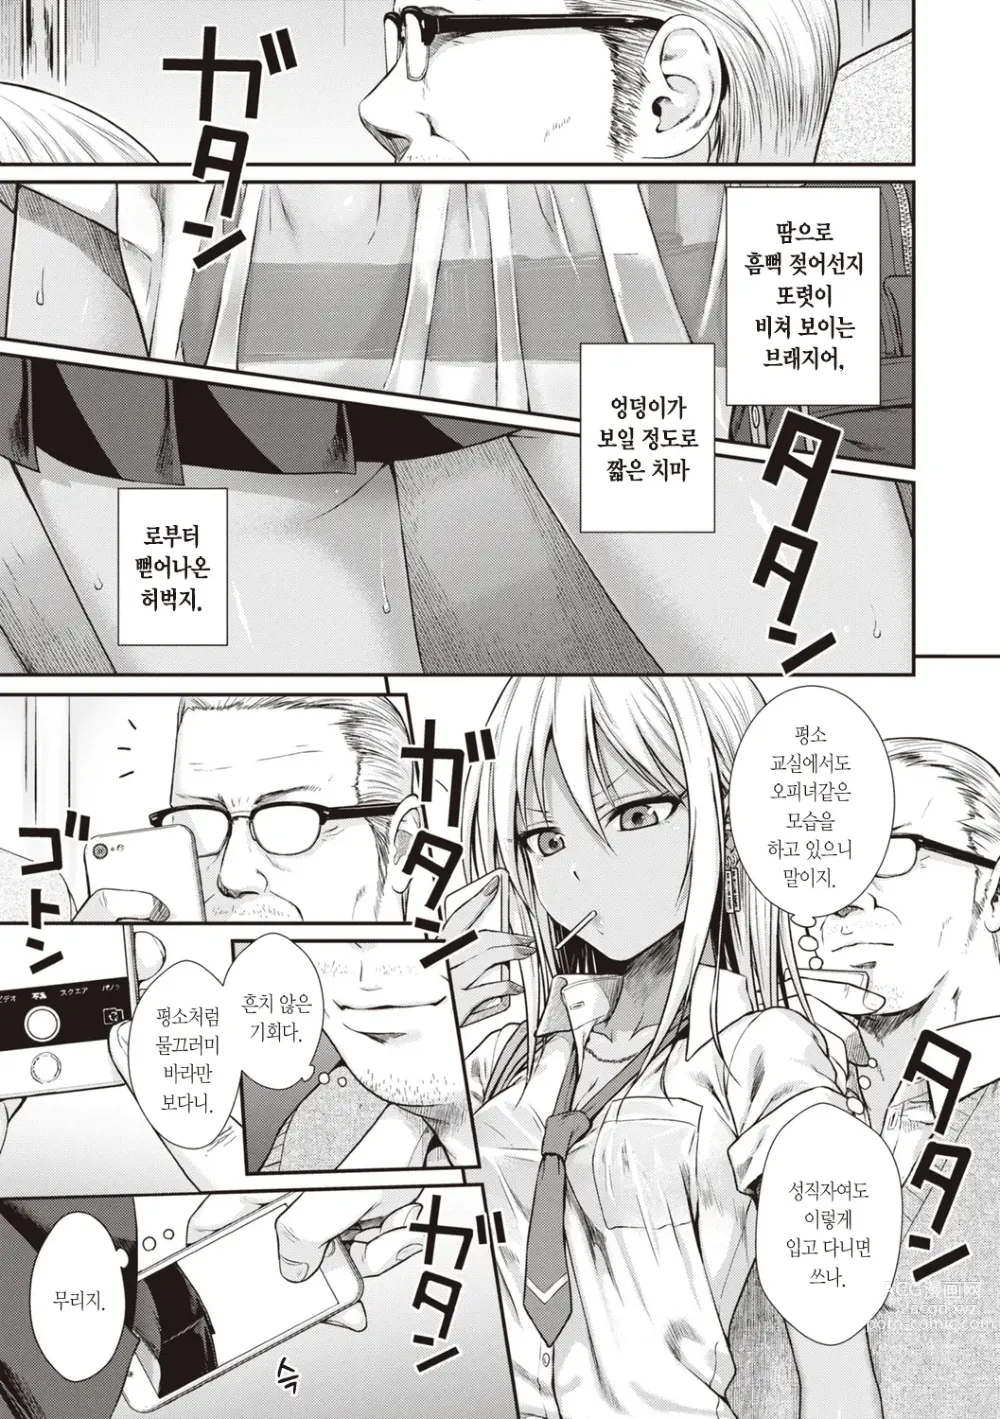 Page 7 of manga 프로토타입 틴즈